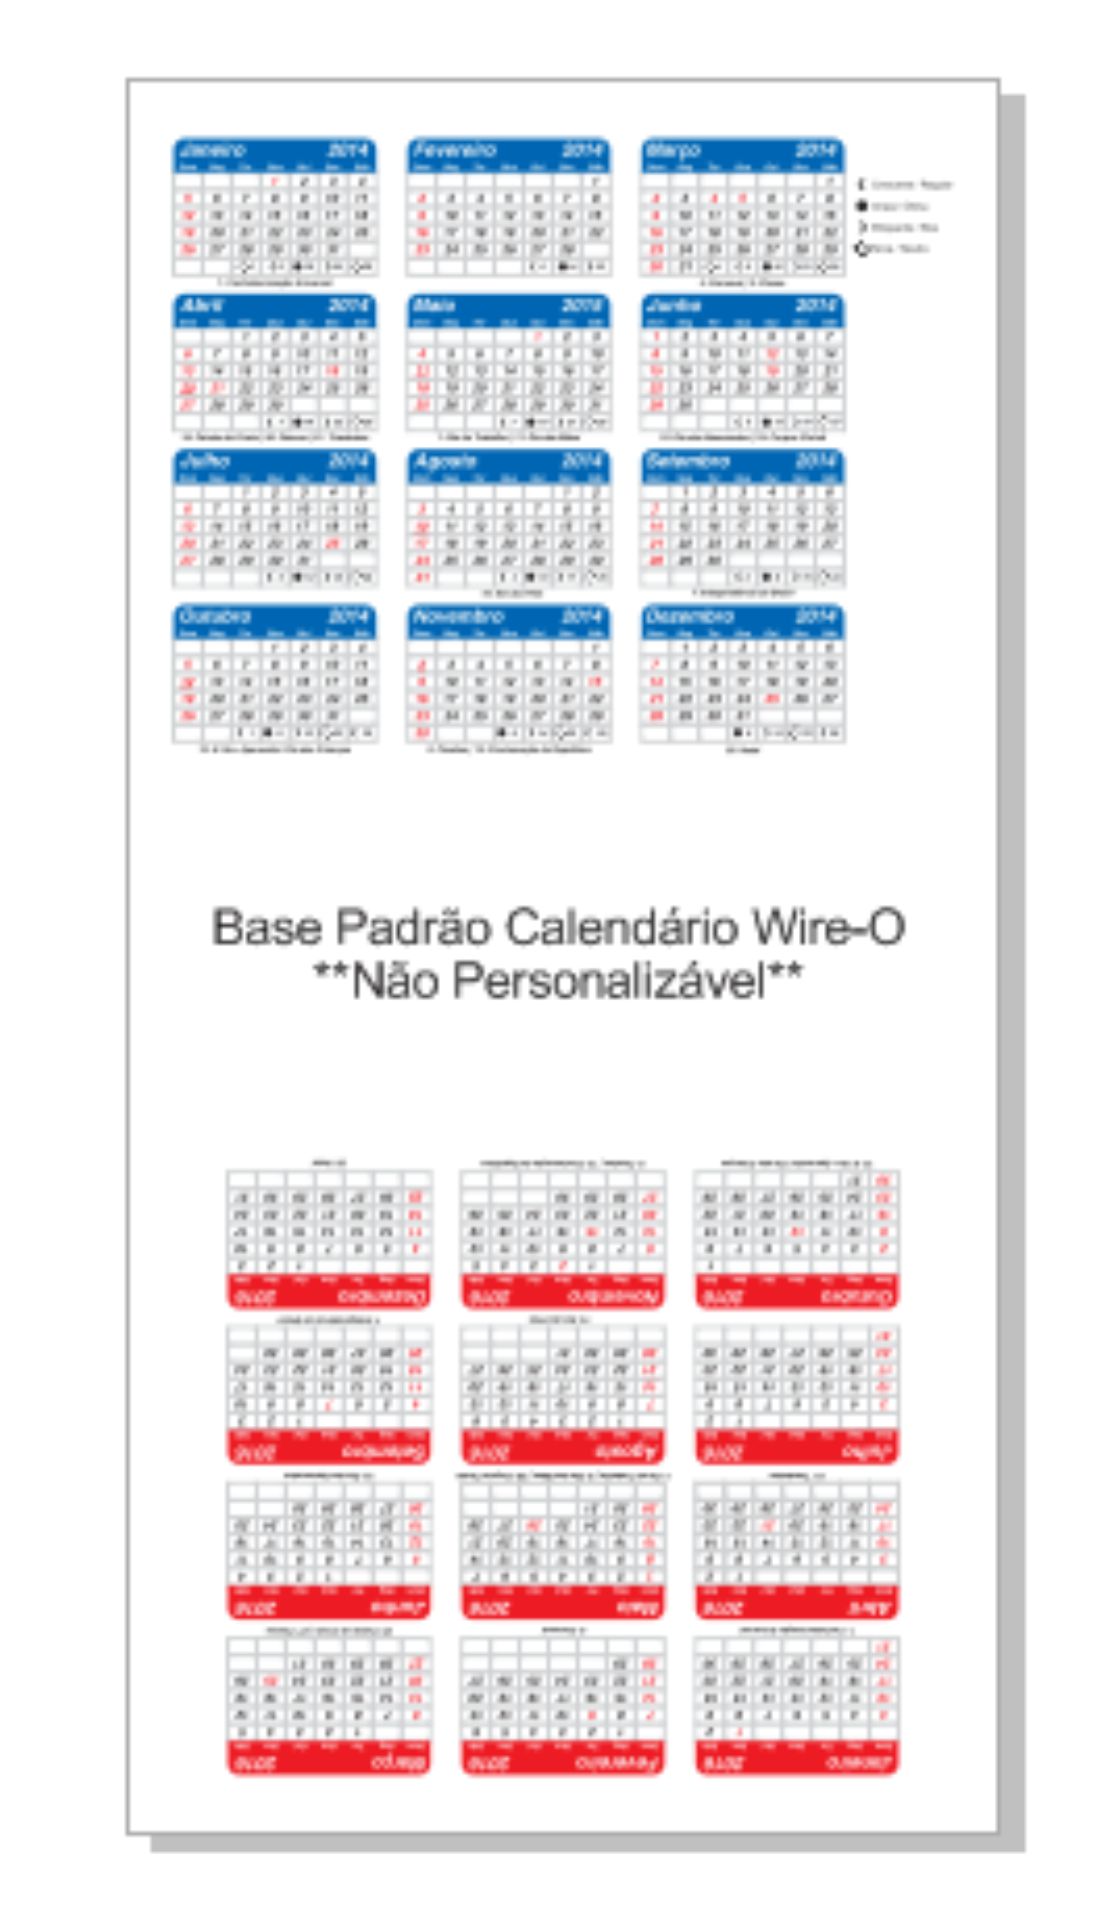 Arte padrão da base para calendário de mesa wire-o